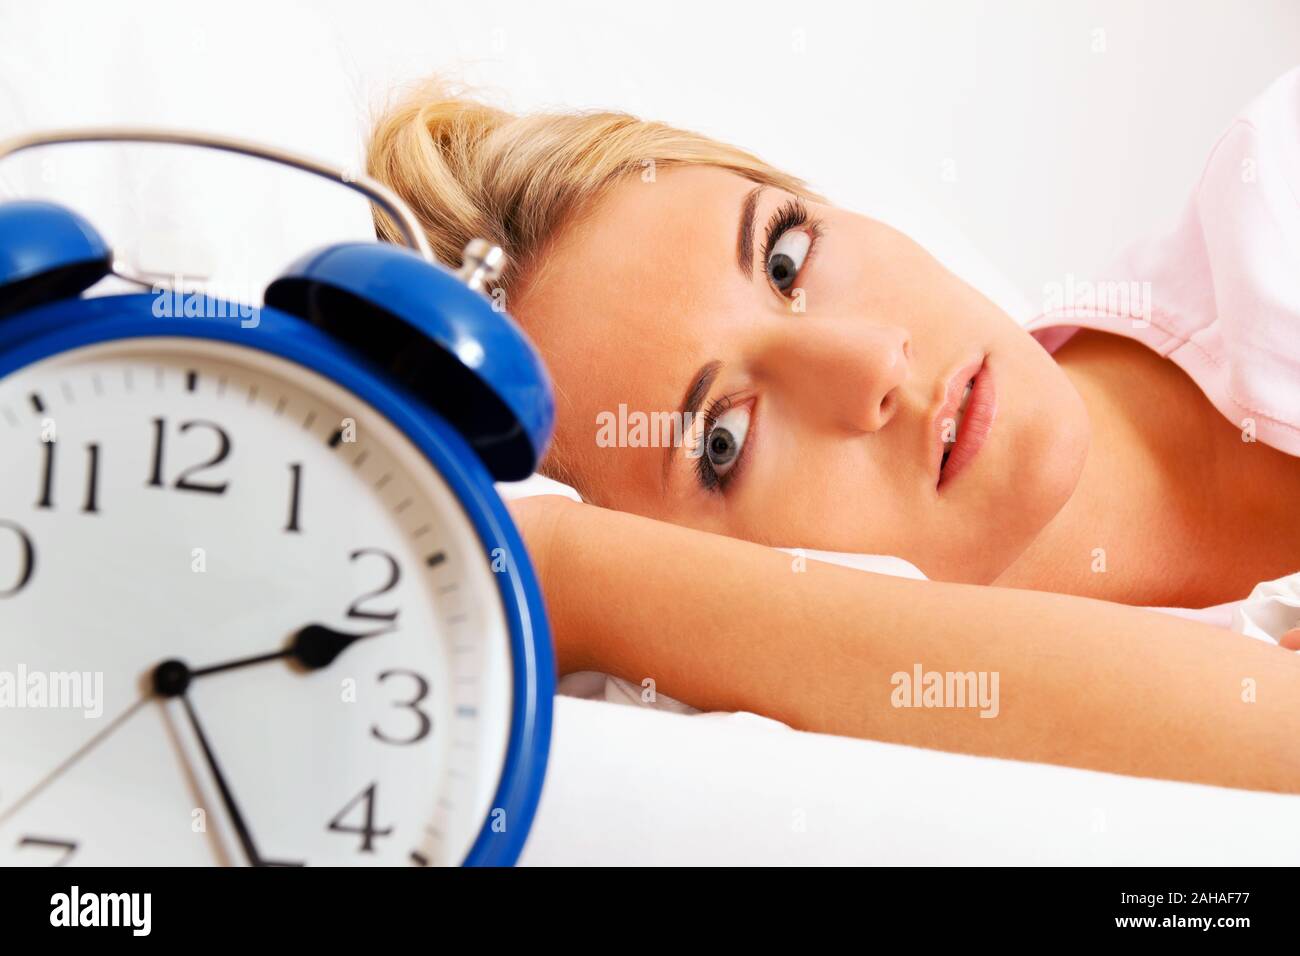 Junge blonde Frau leidet an Schlaflosigkeit, Wecker zeigt 2.25 am, Uhr, MR: Yes Stock Photo